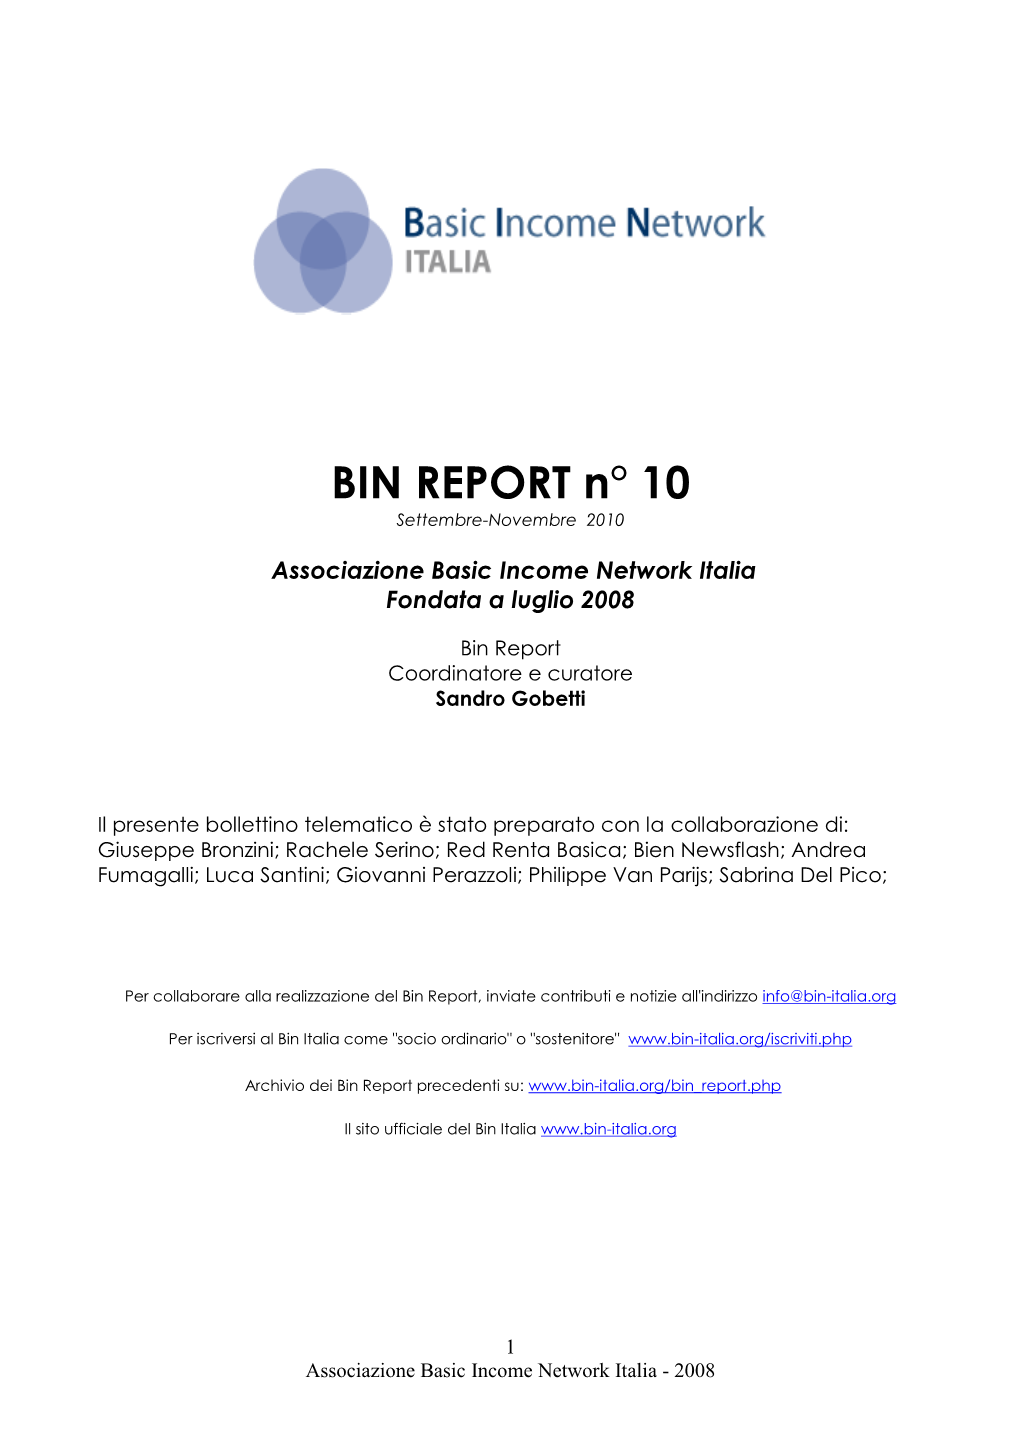 BIN REPORT N° 0